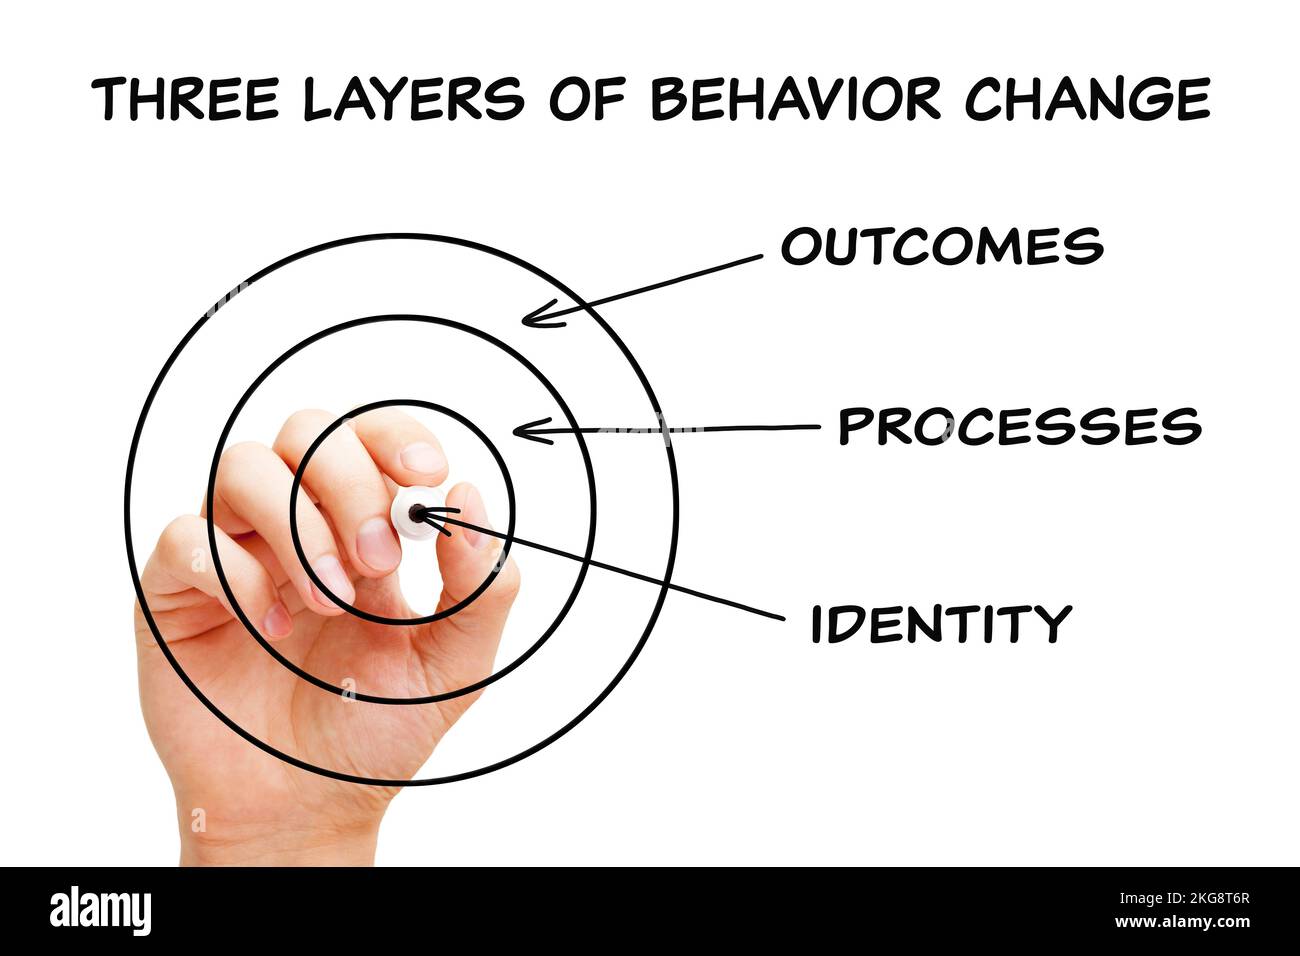 Dessin à la main а concept sur les trois couches de changement de comportement - identité, processus et résultats avec marqueur noir sur tableau transparent. Banque D'Images